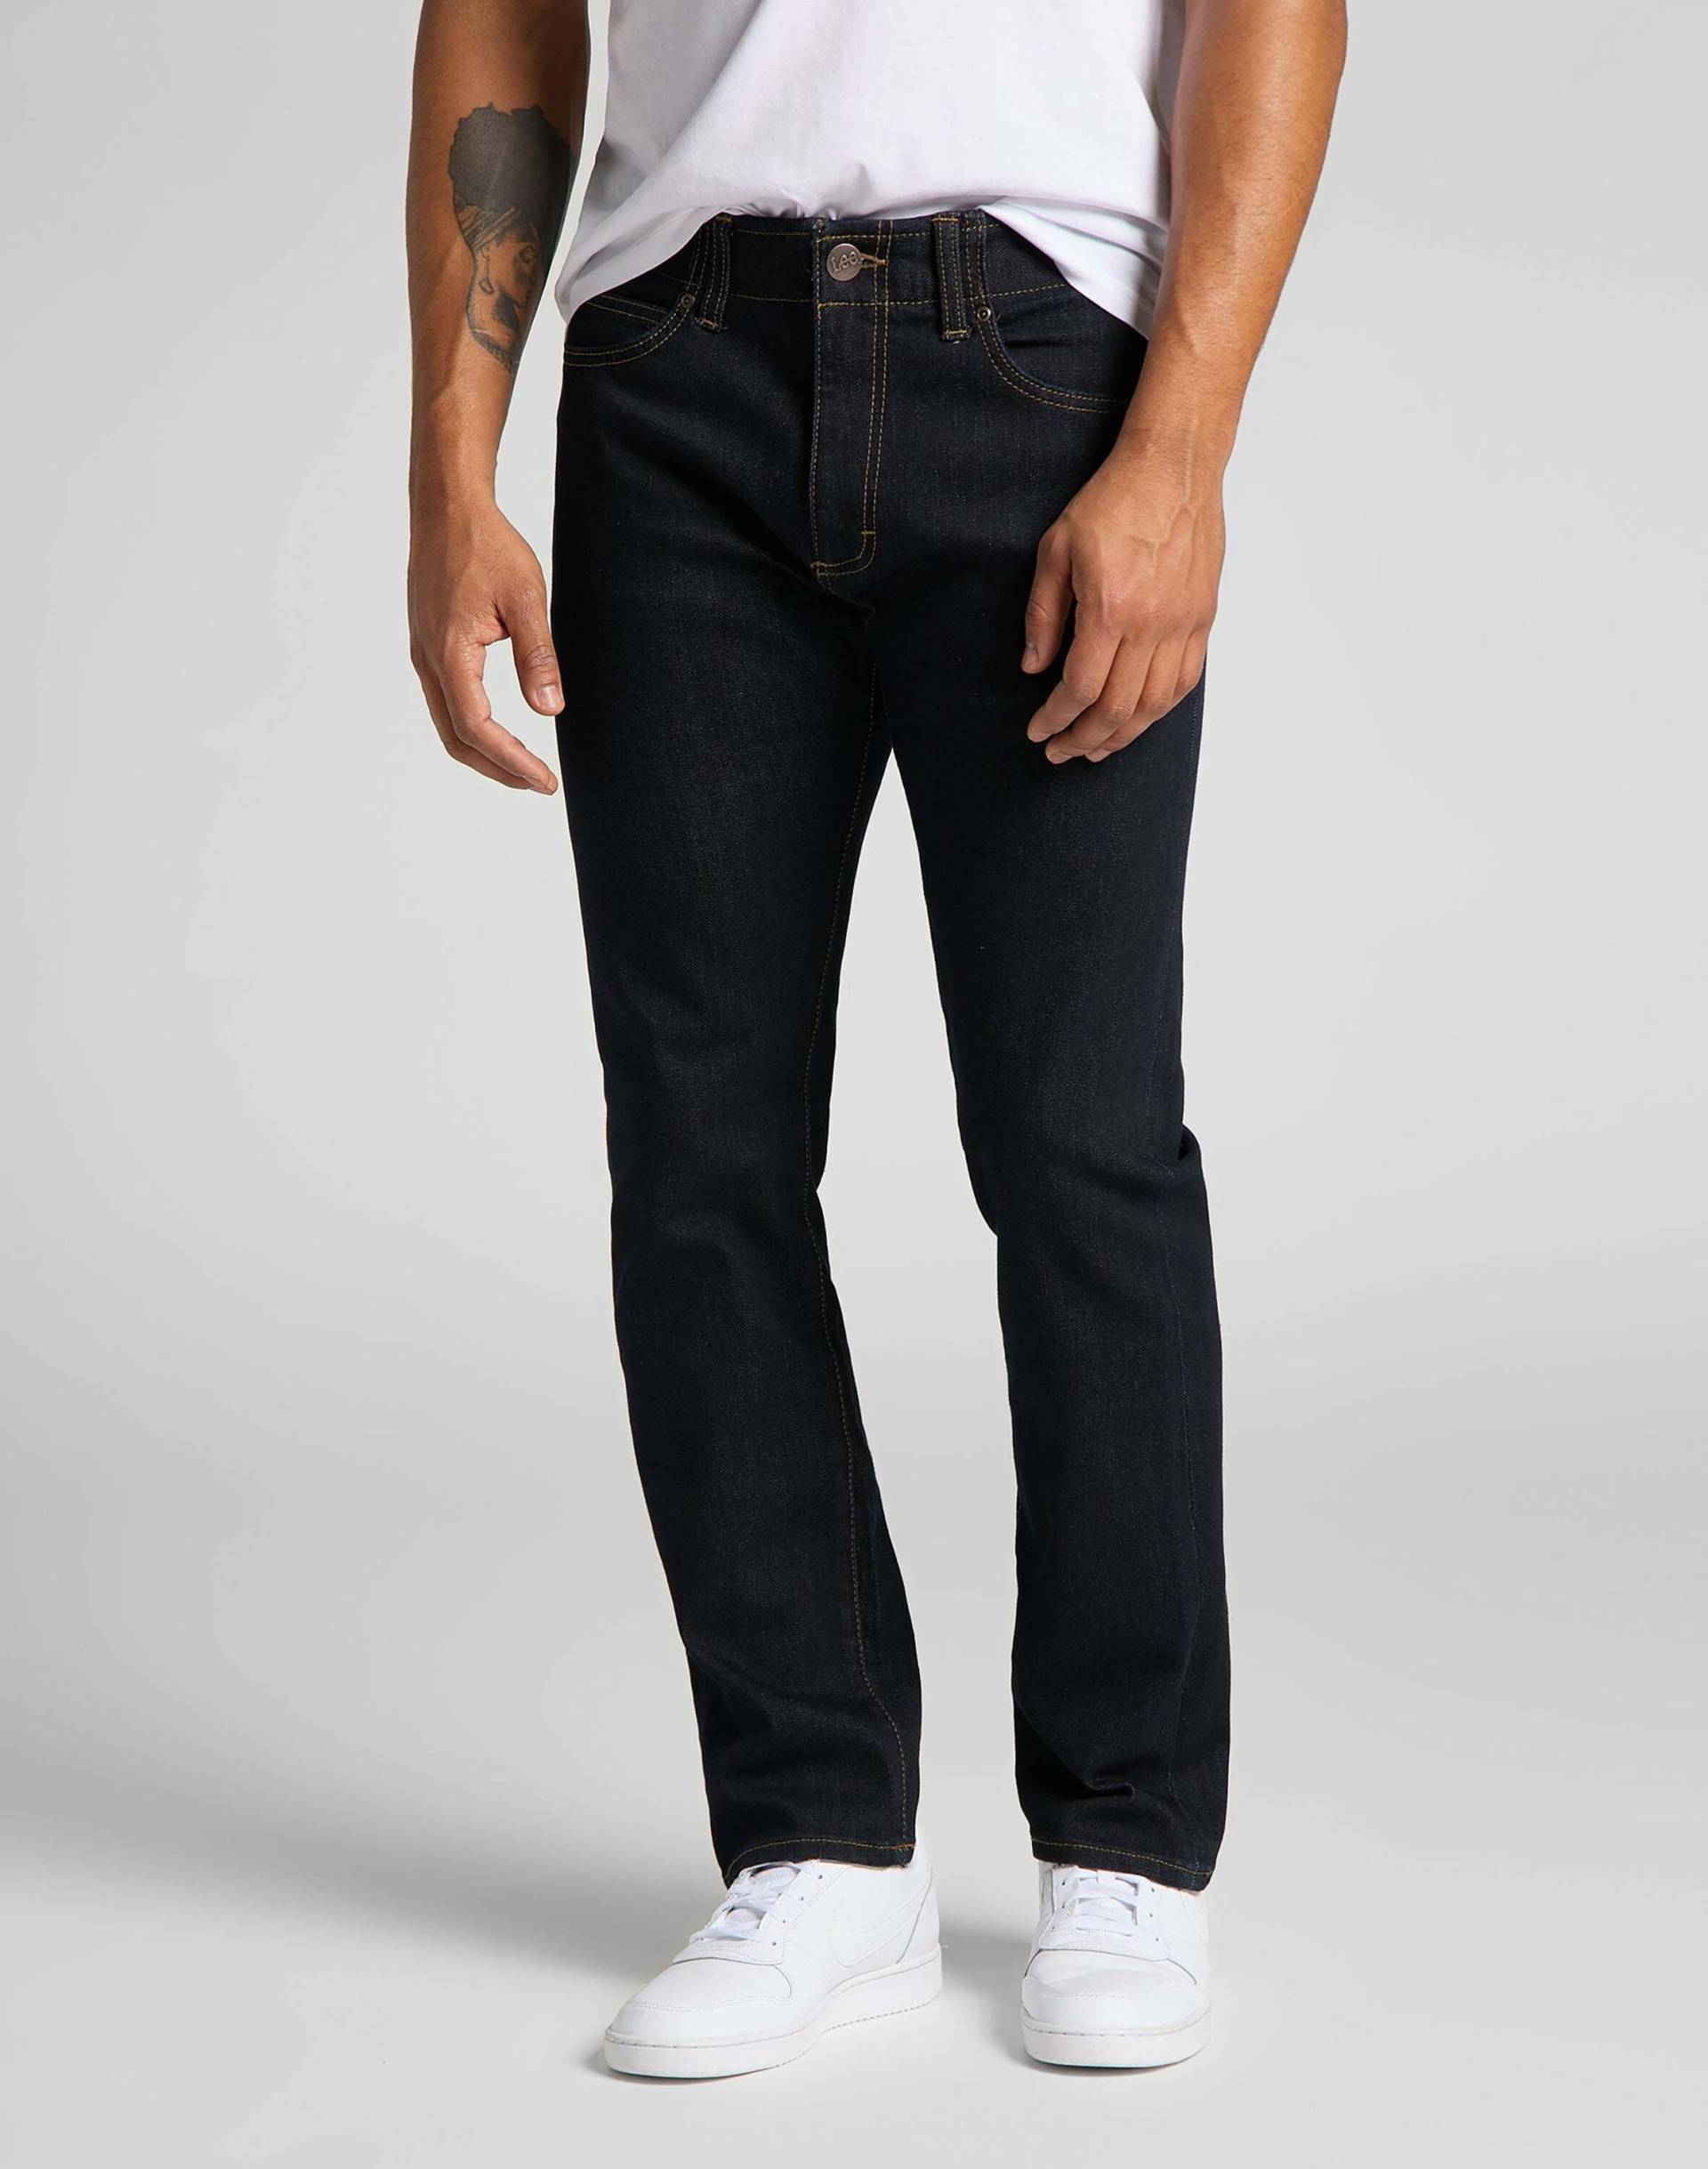 Jeans Slim Fit Mvp Herren Blau L32/W30 von Lee